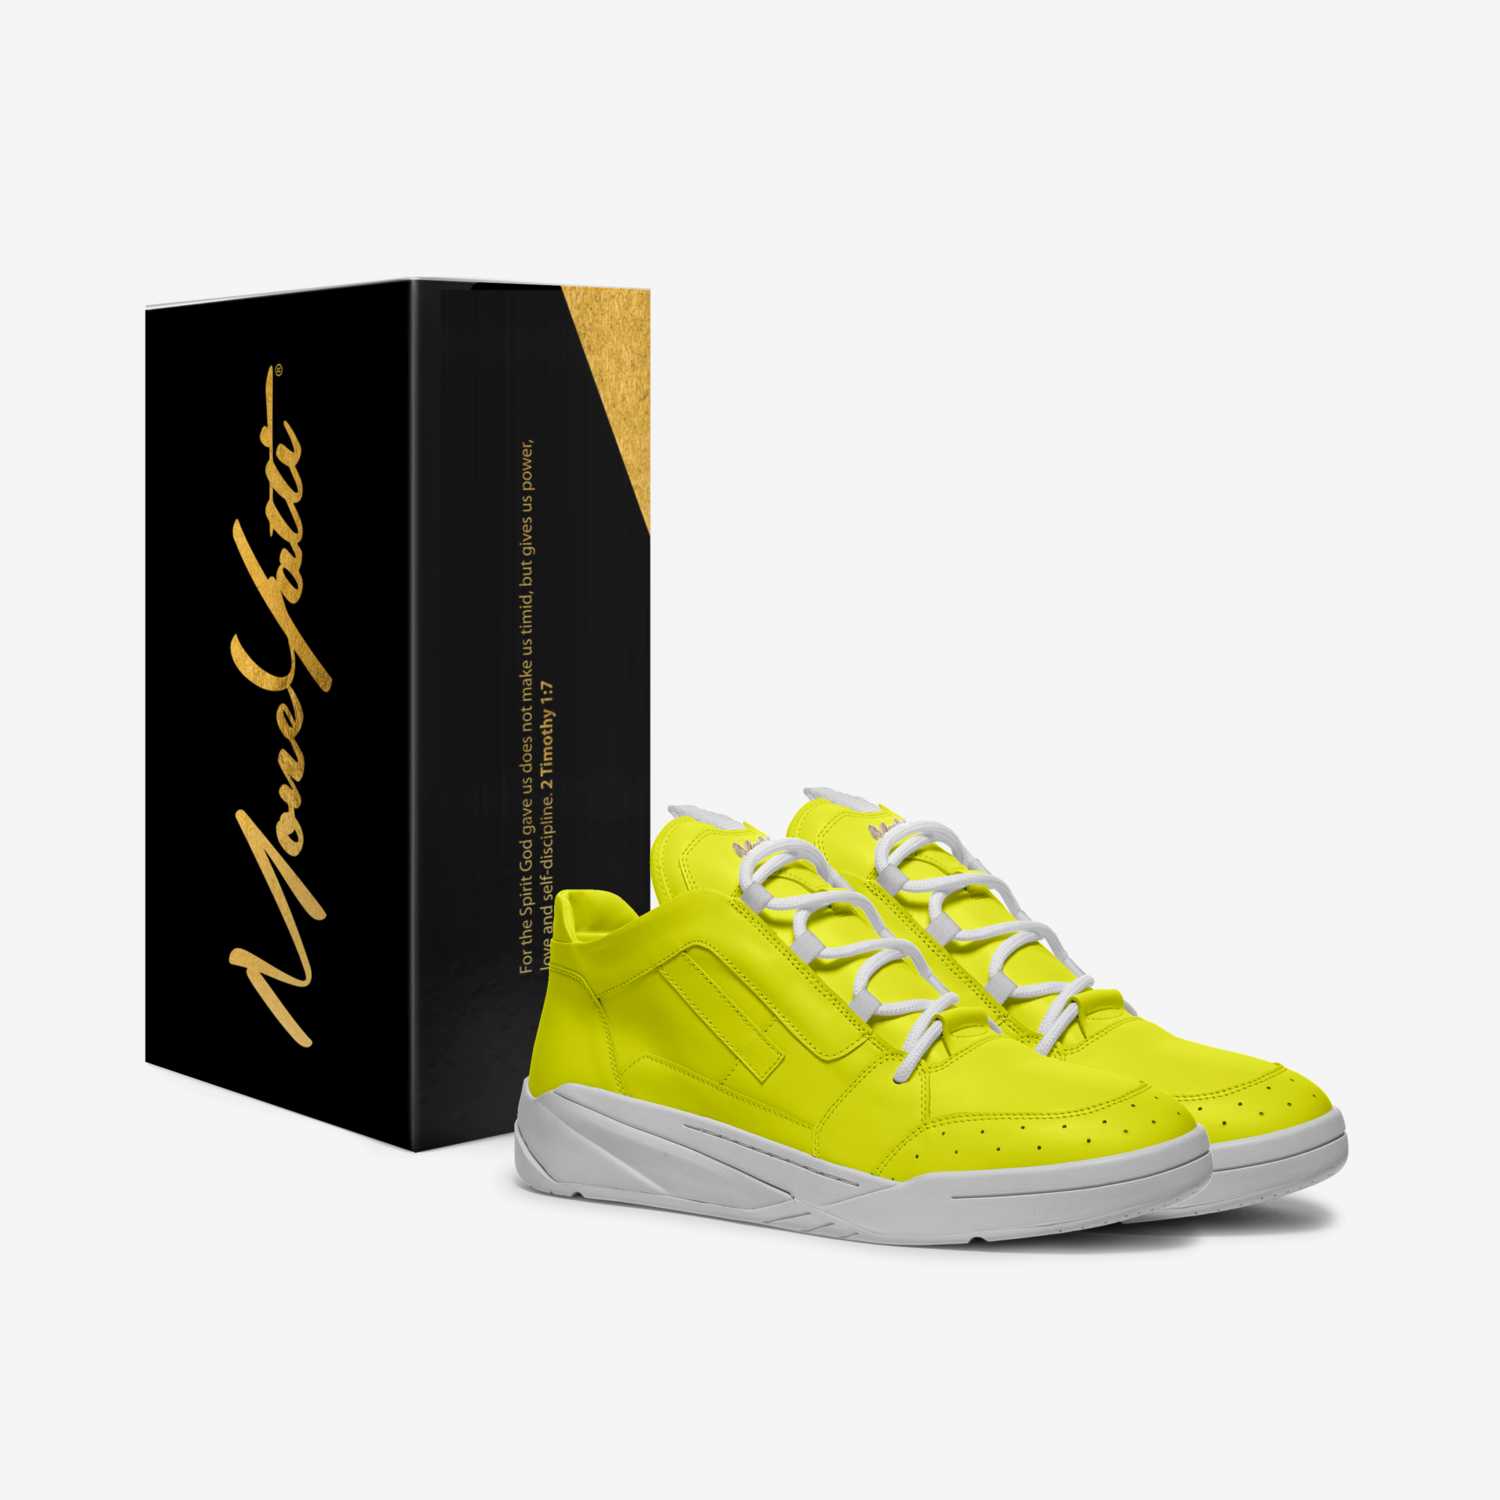 Moneyatti BallP21 custom made in Italy shoes by Moneyatti Brand | Box view